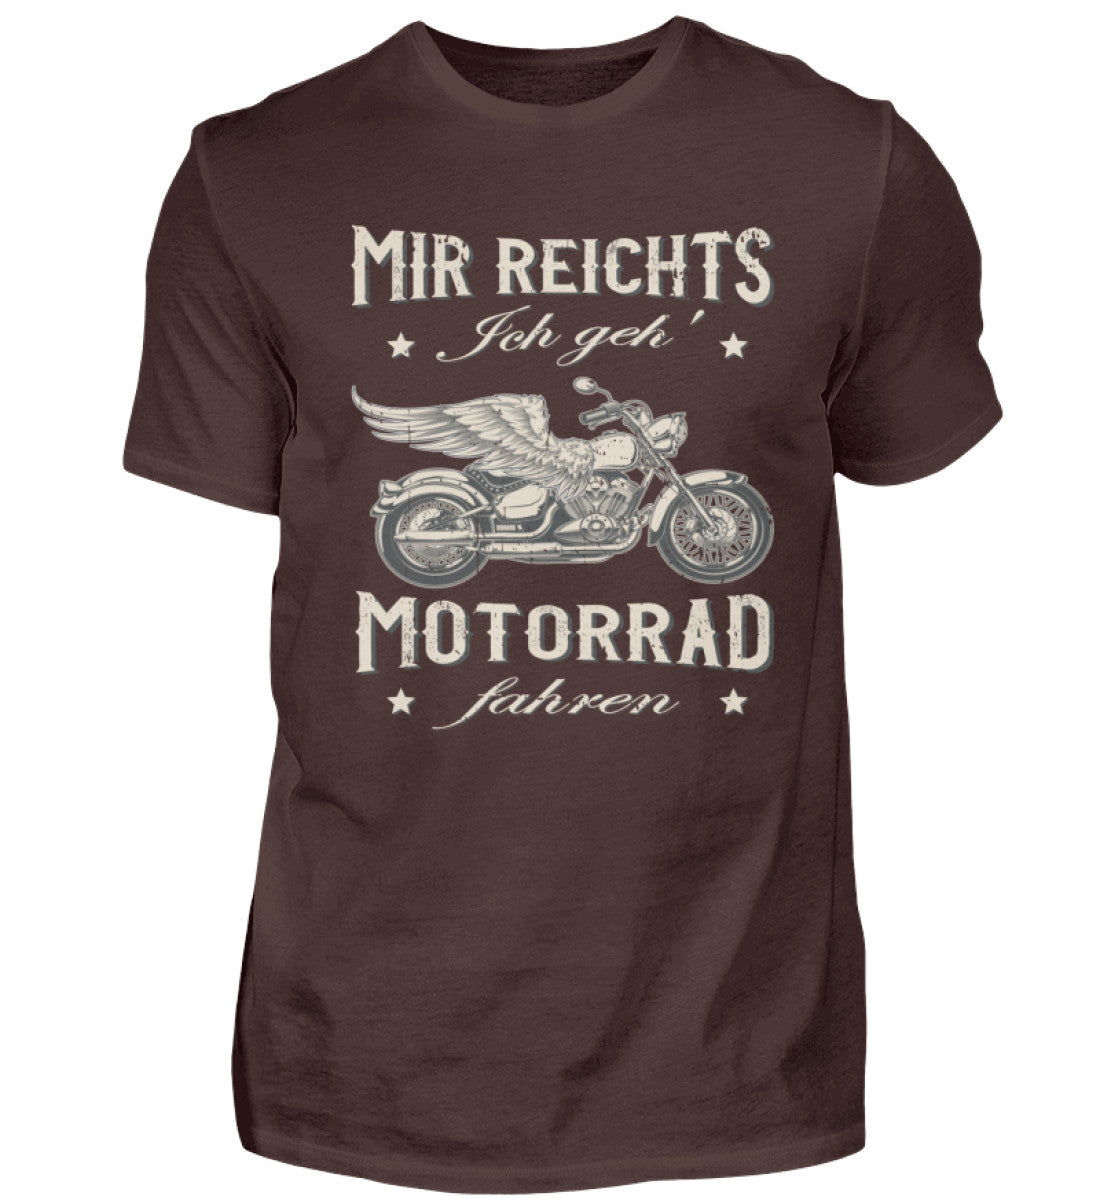 Ein Biker T-Shirt für Motorradfahrer von Wingbikers mit dem Aufdruck, Mir reichts, ich geh´ Motorrad fahren - in braun.